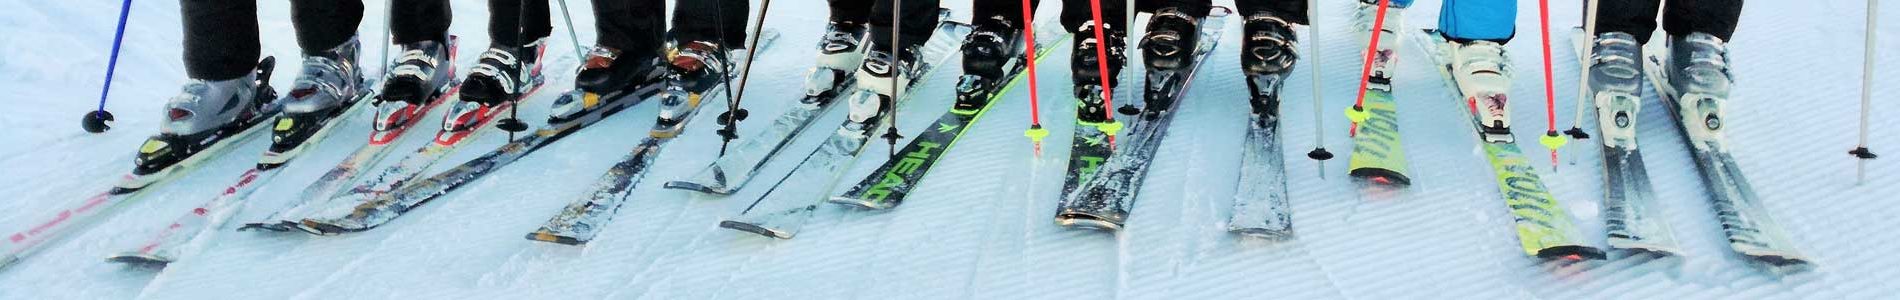 Ski, Snowboard & Inliner